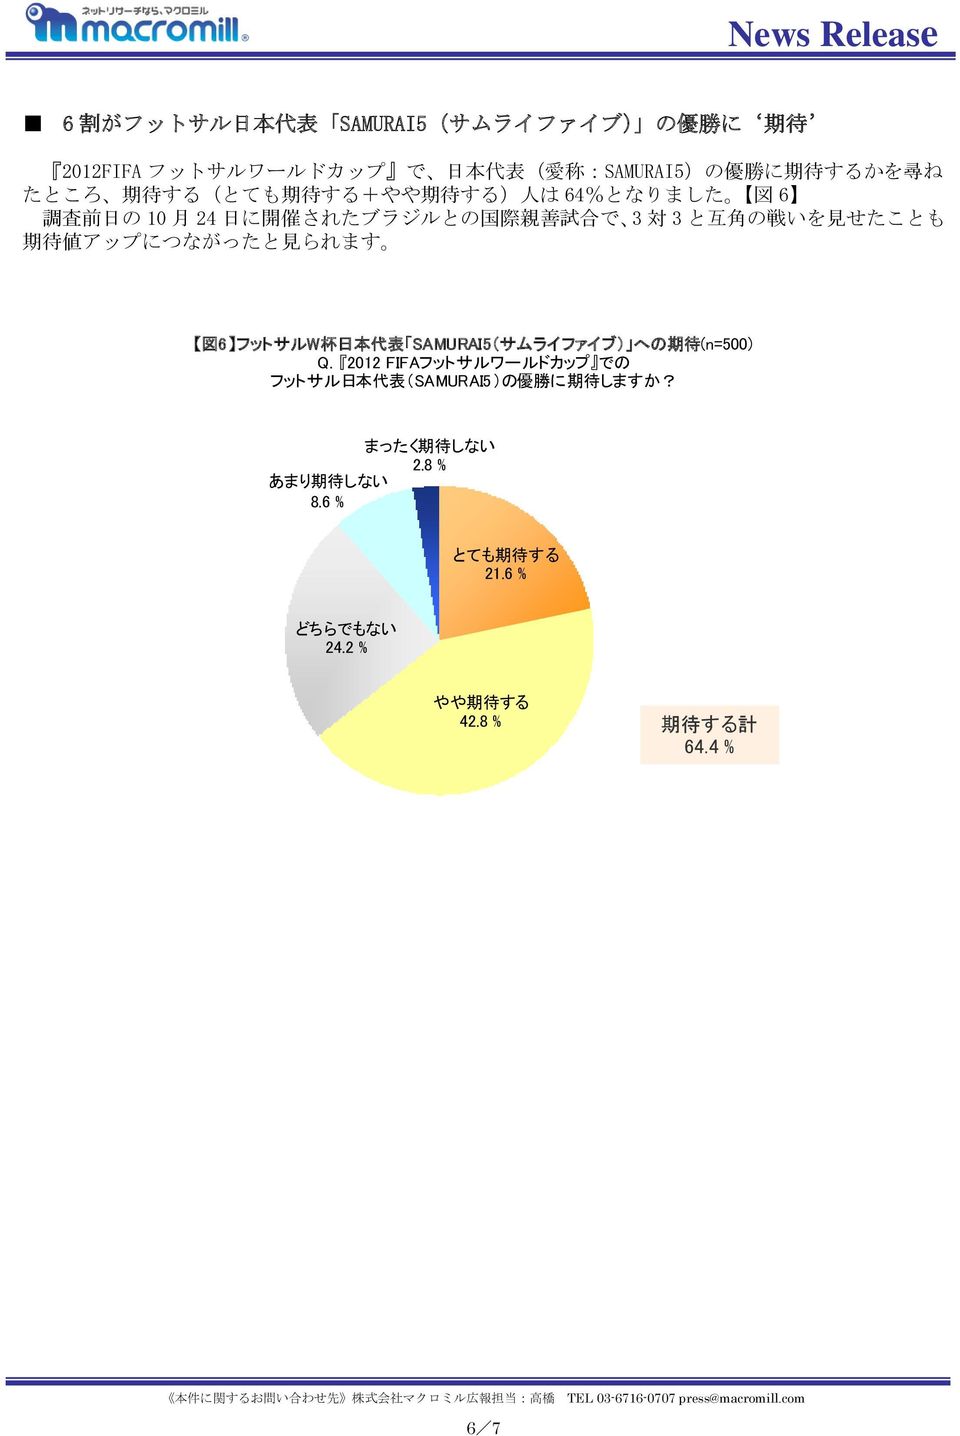 値 アップにつながったと 見 られます 図 6 フットサルW 杯 日 本 代 表 SAMURAI5(サムライファイブ) への 期 待 (n=500) Q.